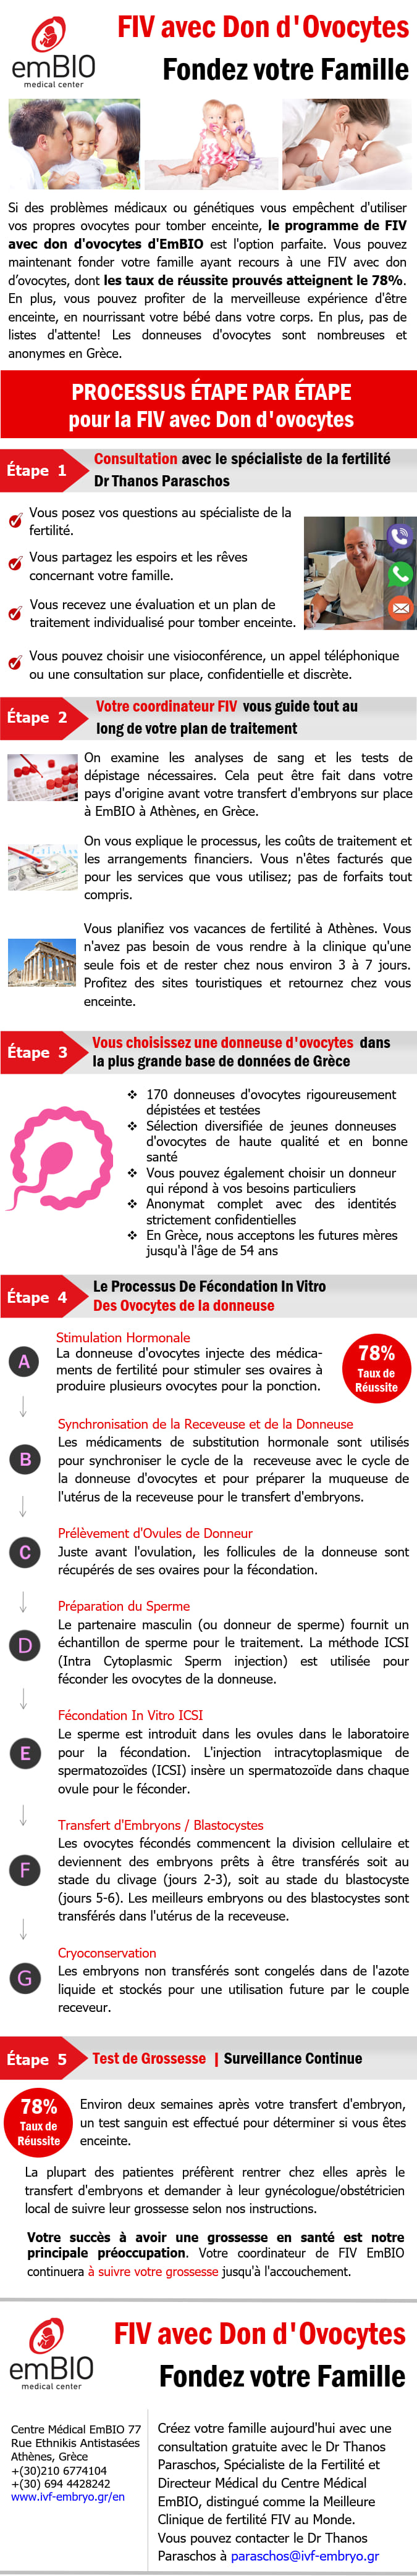 infographic fiv avec don d’ovocytes